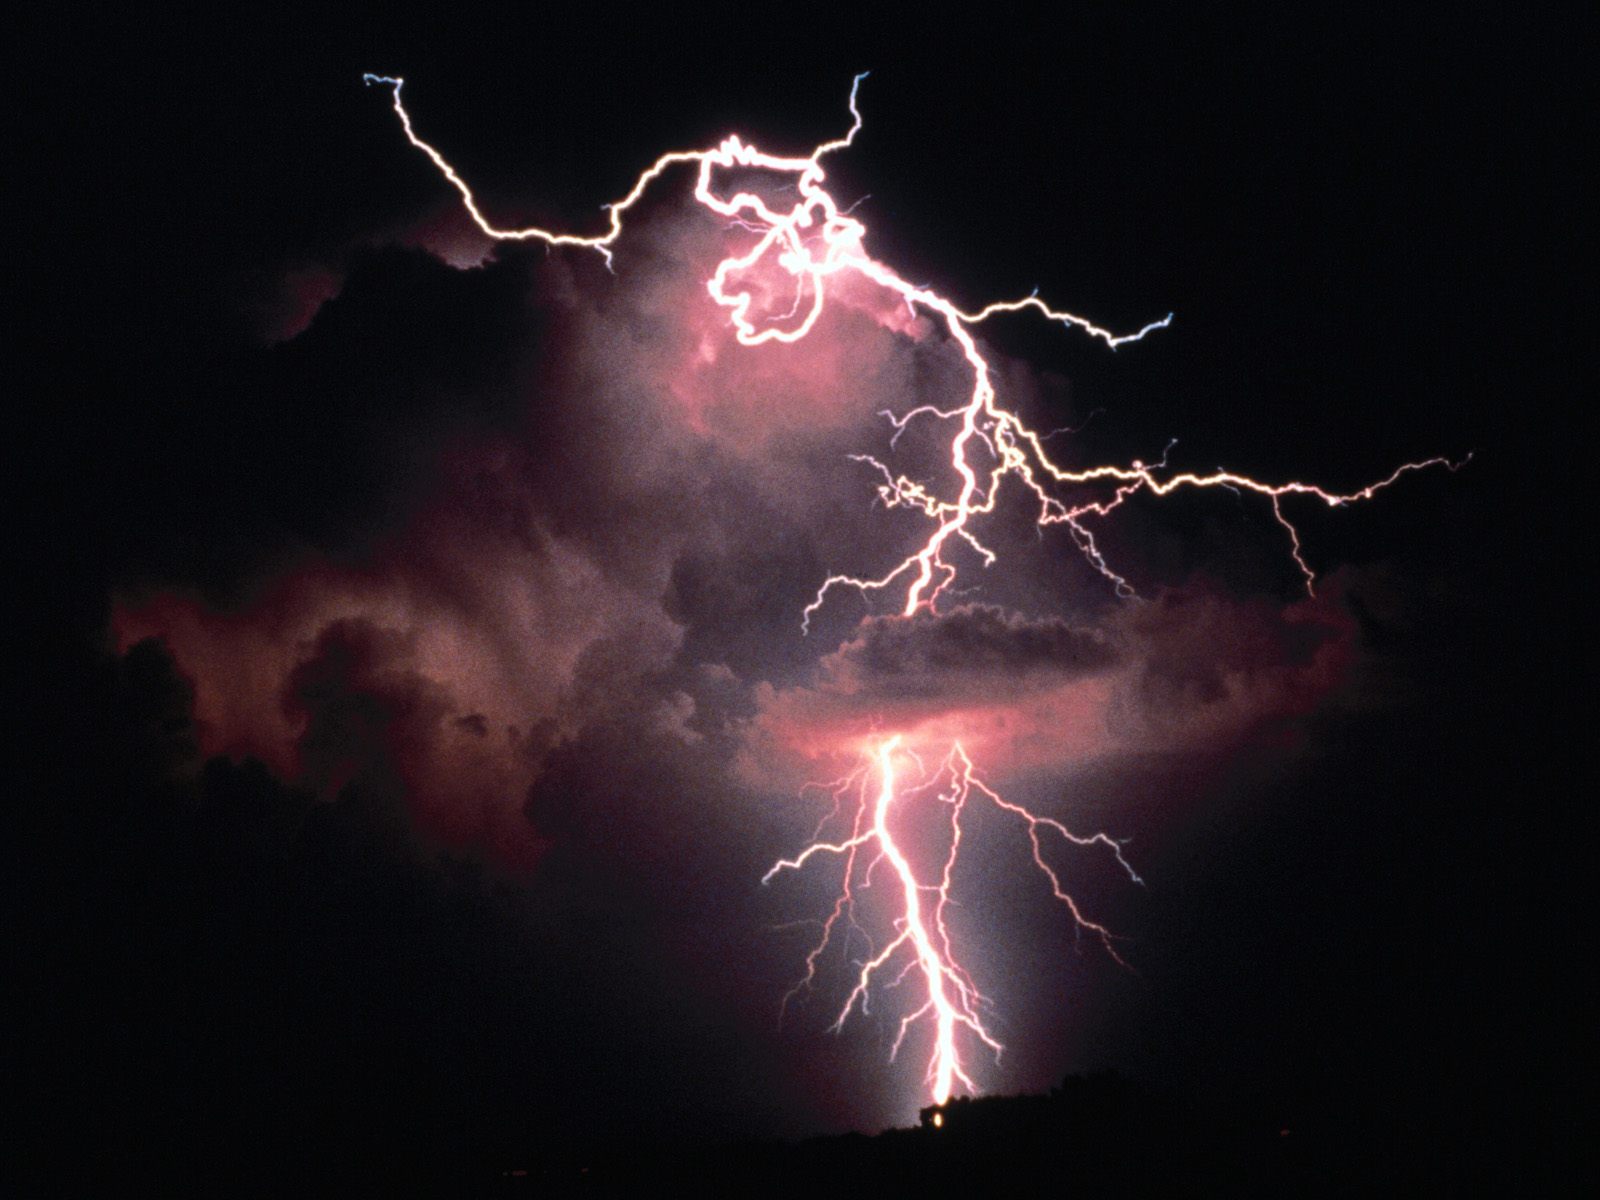 http://2.bp.blogspot.com/-ttHPaXeNg9k/T40-e_-vjAI/AAAAAAAABiE/AnuPbE6jMpE/s1600/electrical-evening-lightning-pictures.jpg